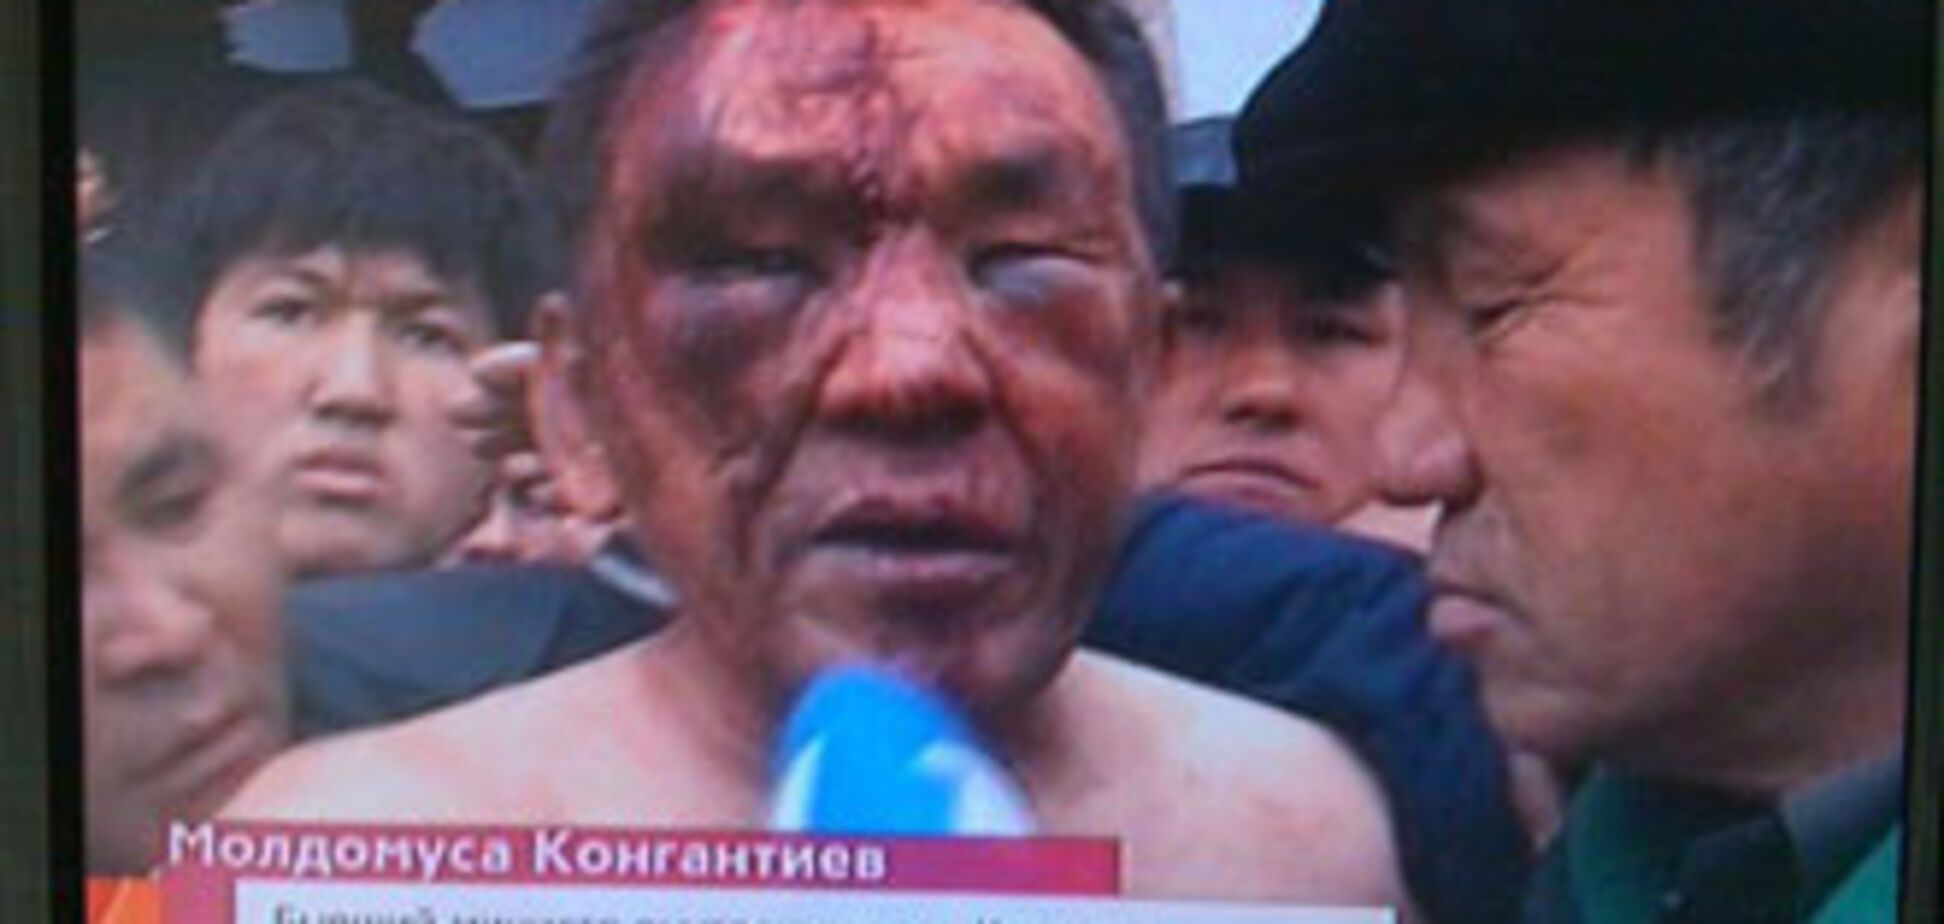 ФОТО дня. Избитый повстанцами бывший министр МВД Киргизии